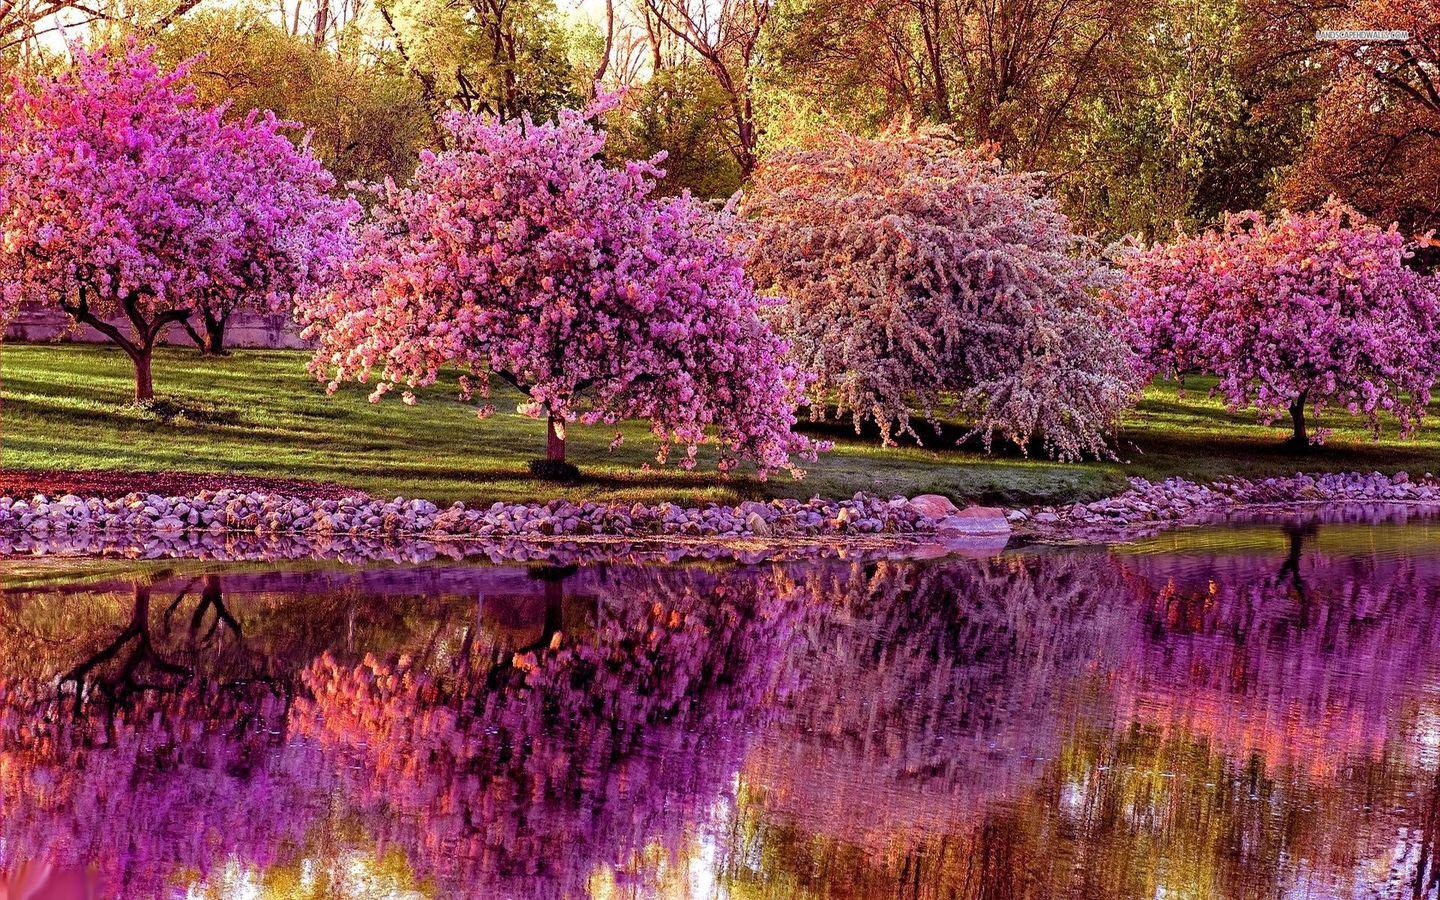 عکس یک صبح بهاری دل انگیز با درخت هایی به رنگ بنفش و صورتی